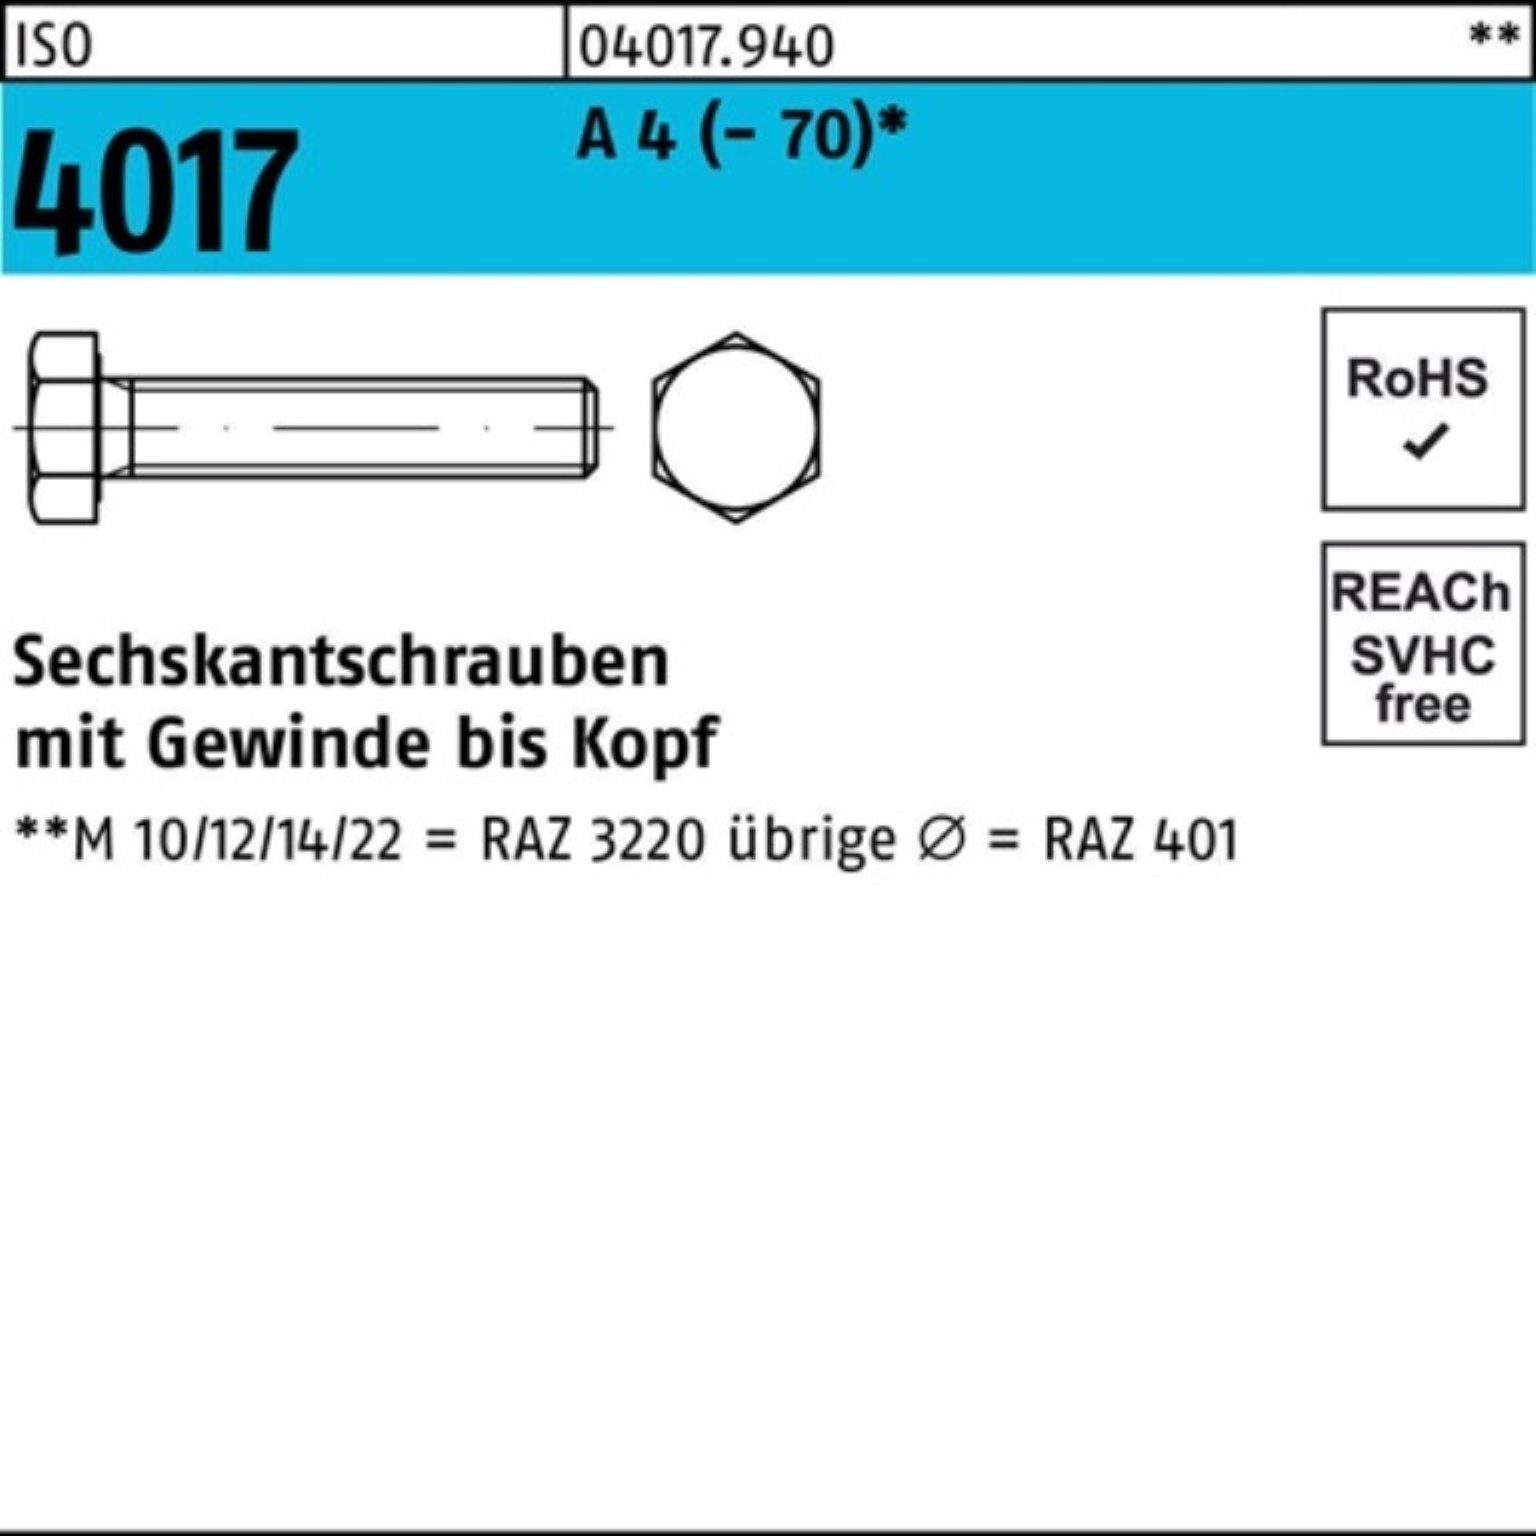 Sechskantschraube Sechskantschraube 4 90 ISO A 1 (70) 4017 I Bufab M27x Stück VG Pack 100er